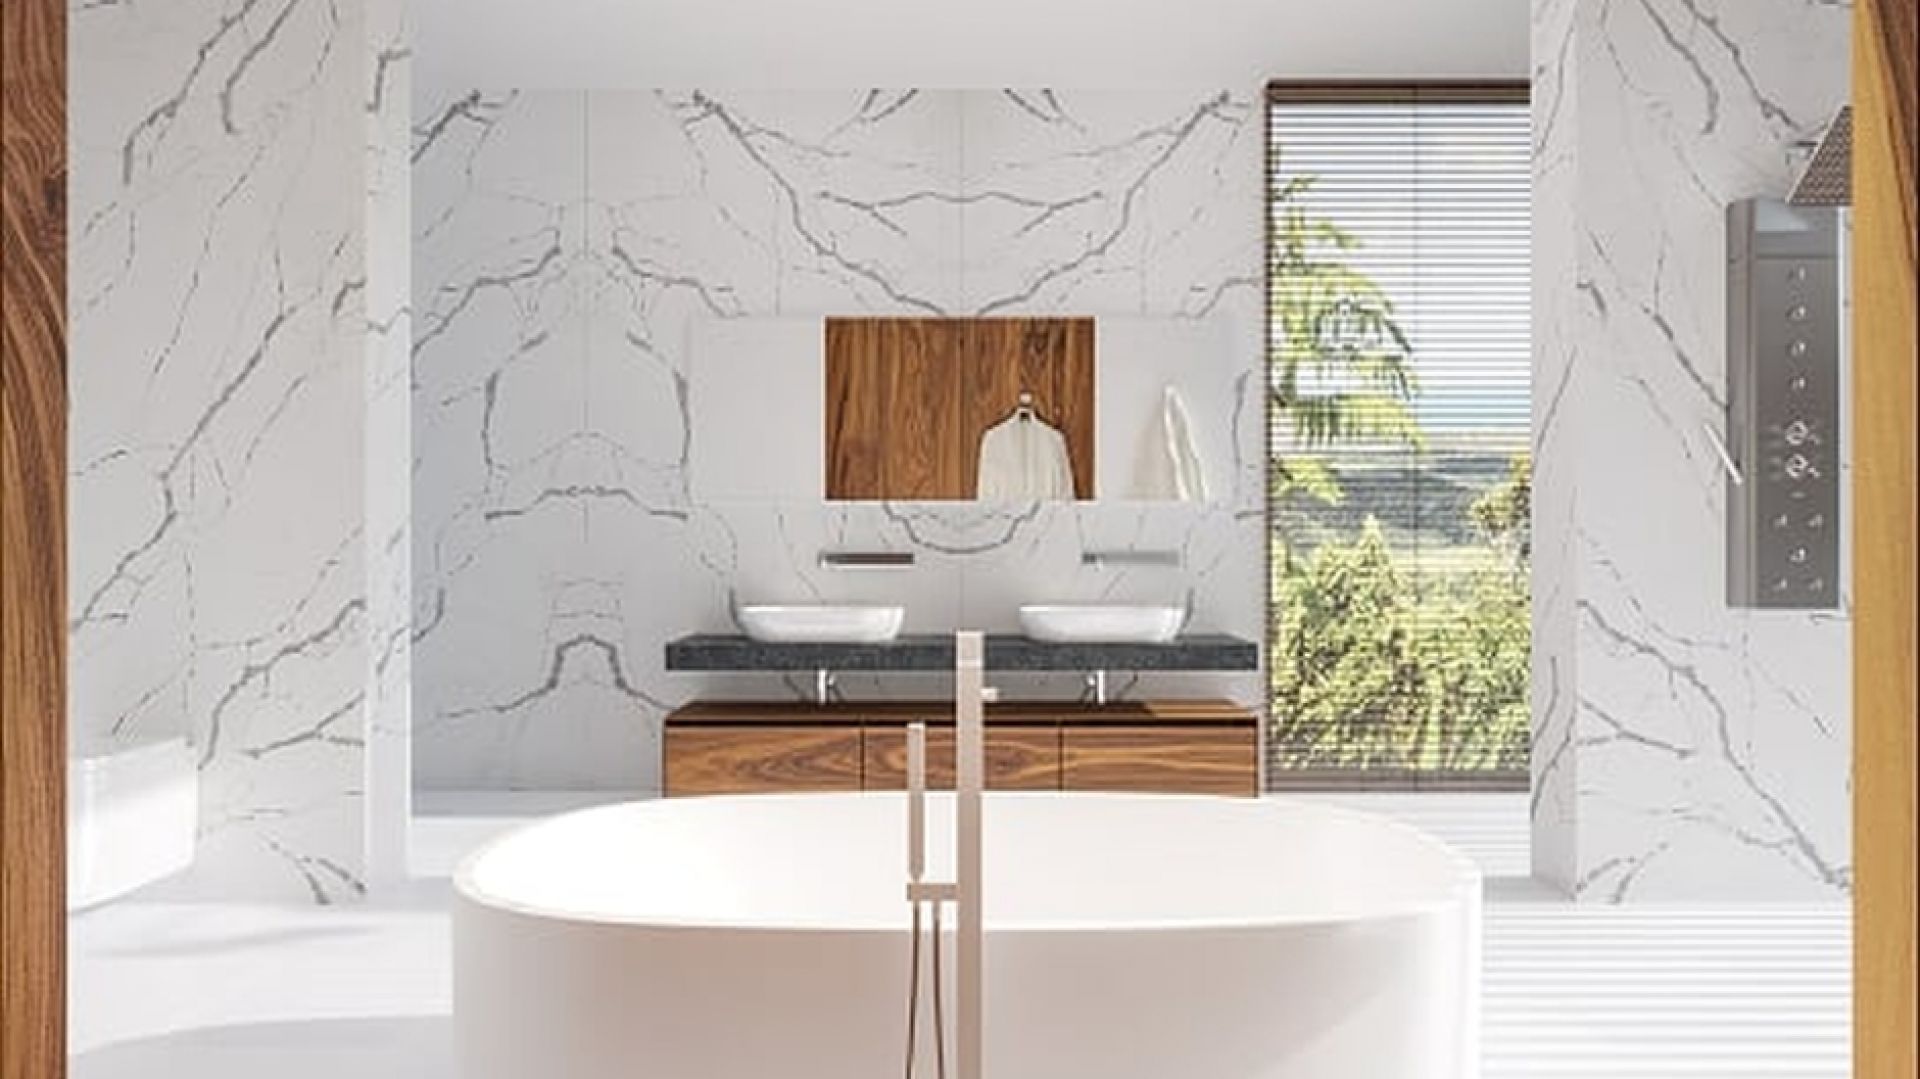 Łazienka urządzona w minimalistycznym stylu